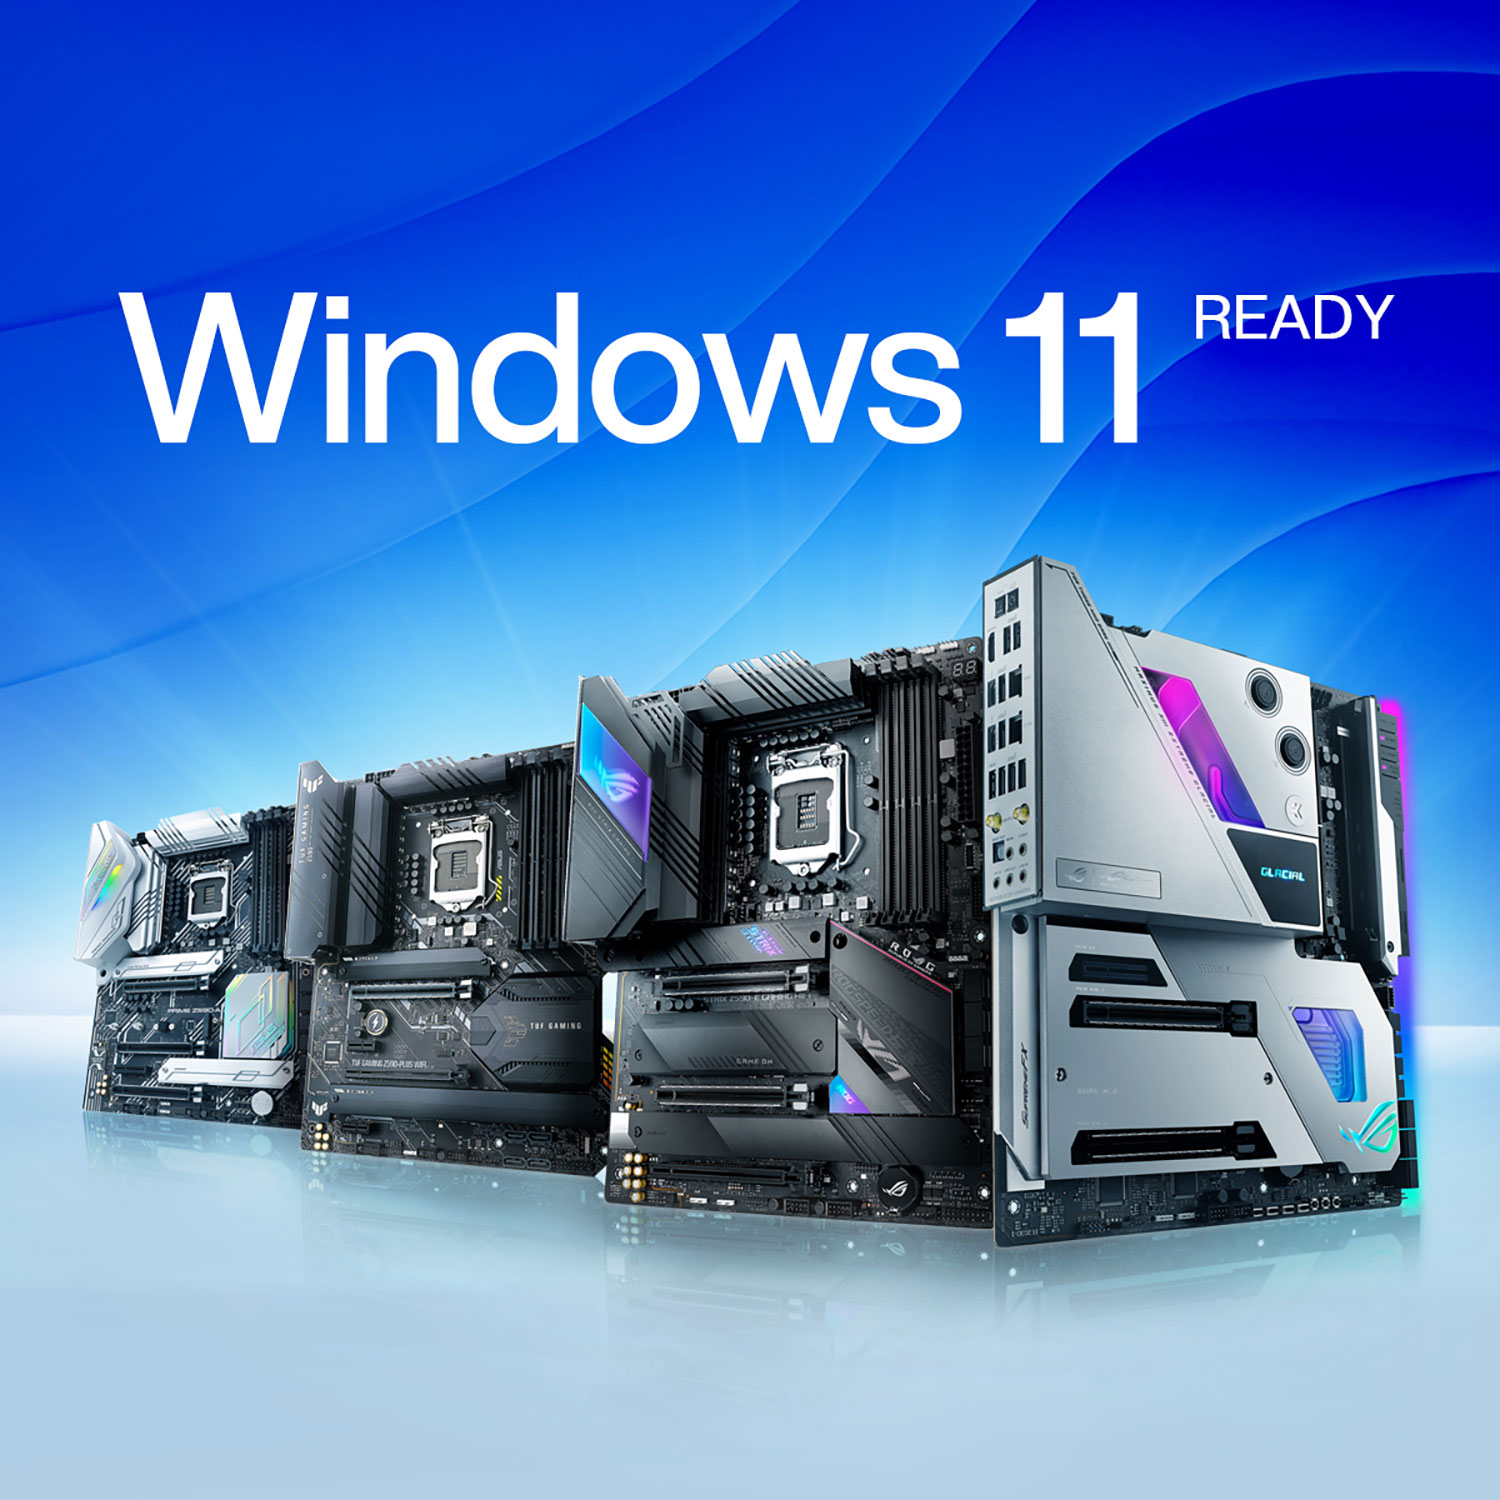 Microsoft anunció oficialmente Windows 11 con un nuevo diseño y distintos cambios en la interfaz para hacerlo más minimalista